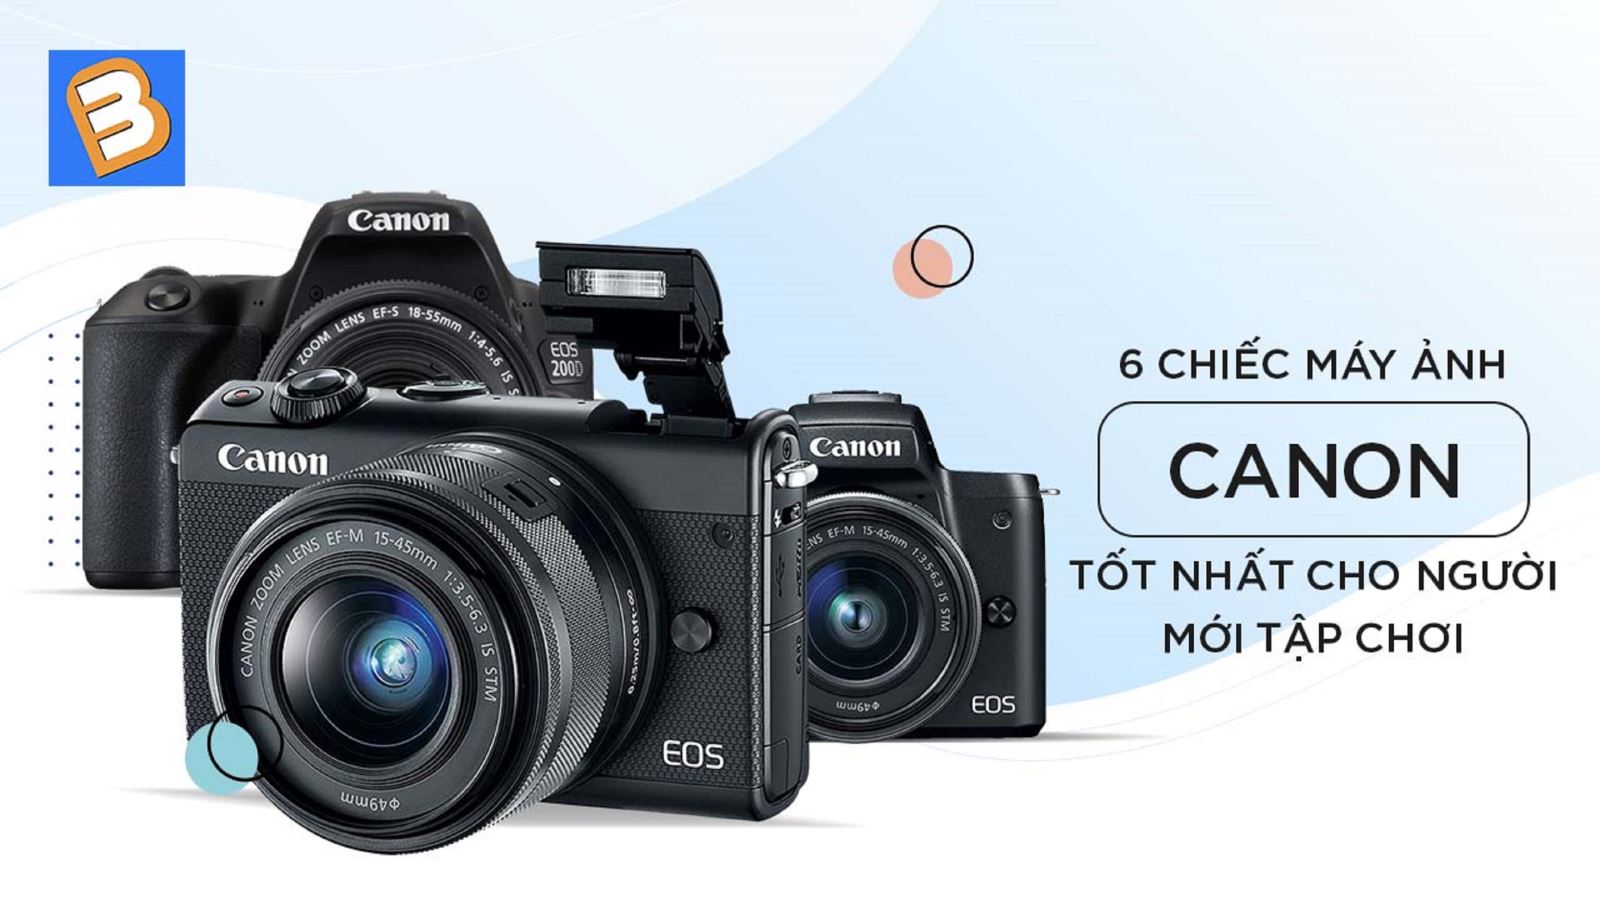 6 chiếc máy ảnh Canon tốt nhất cho người mới tập chơi